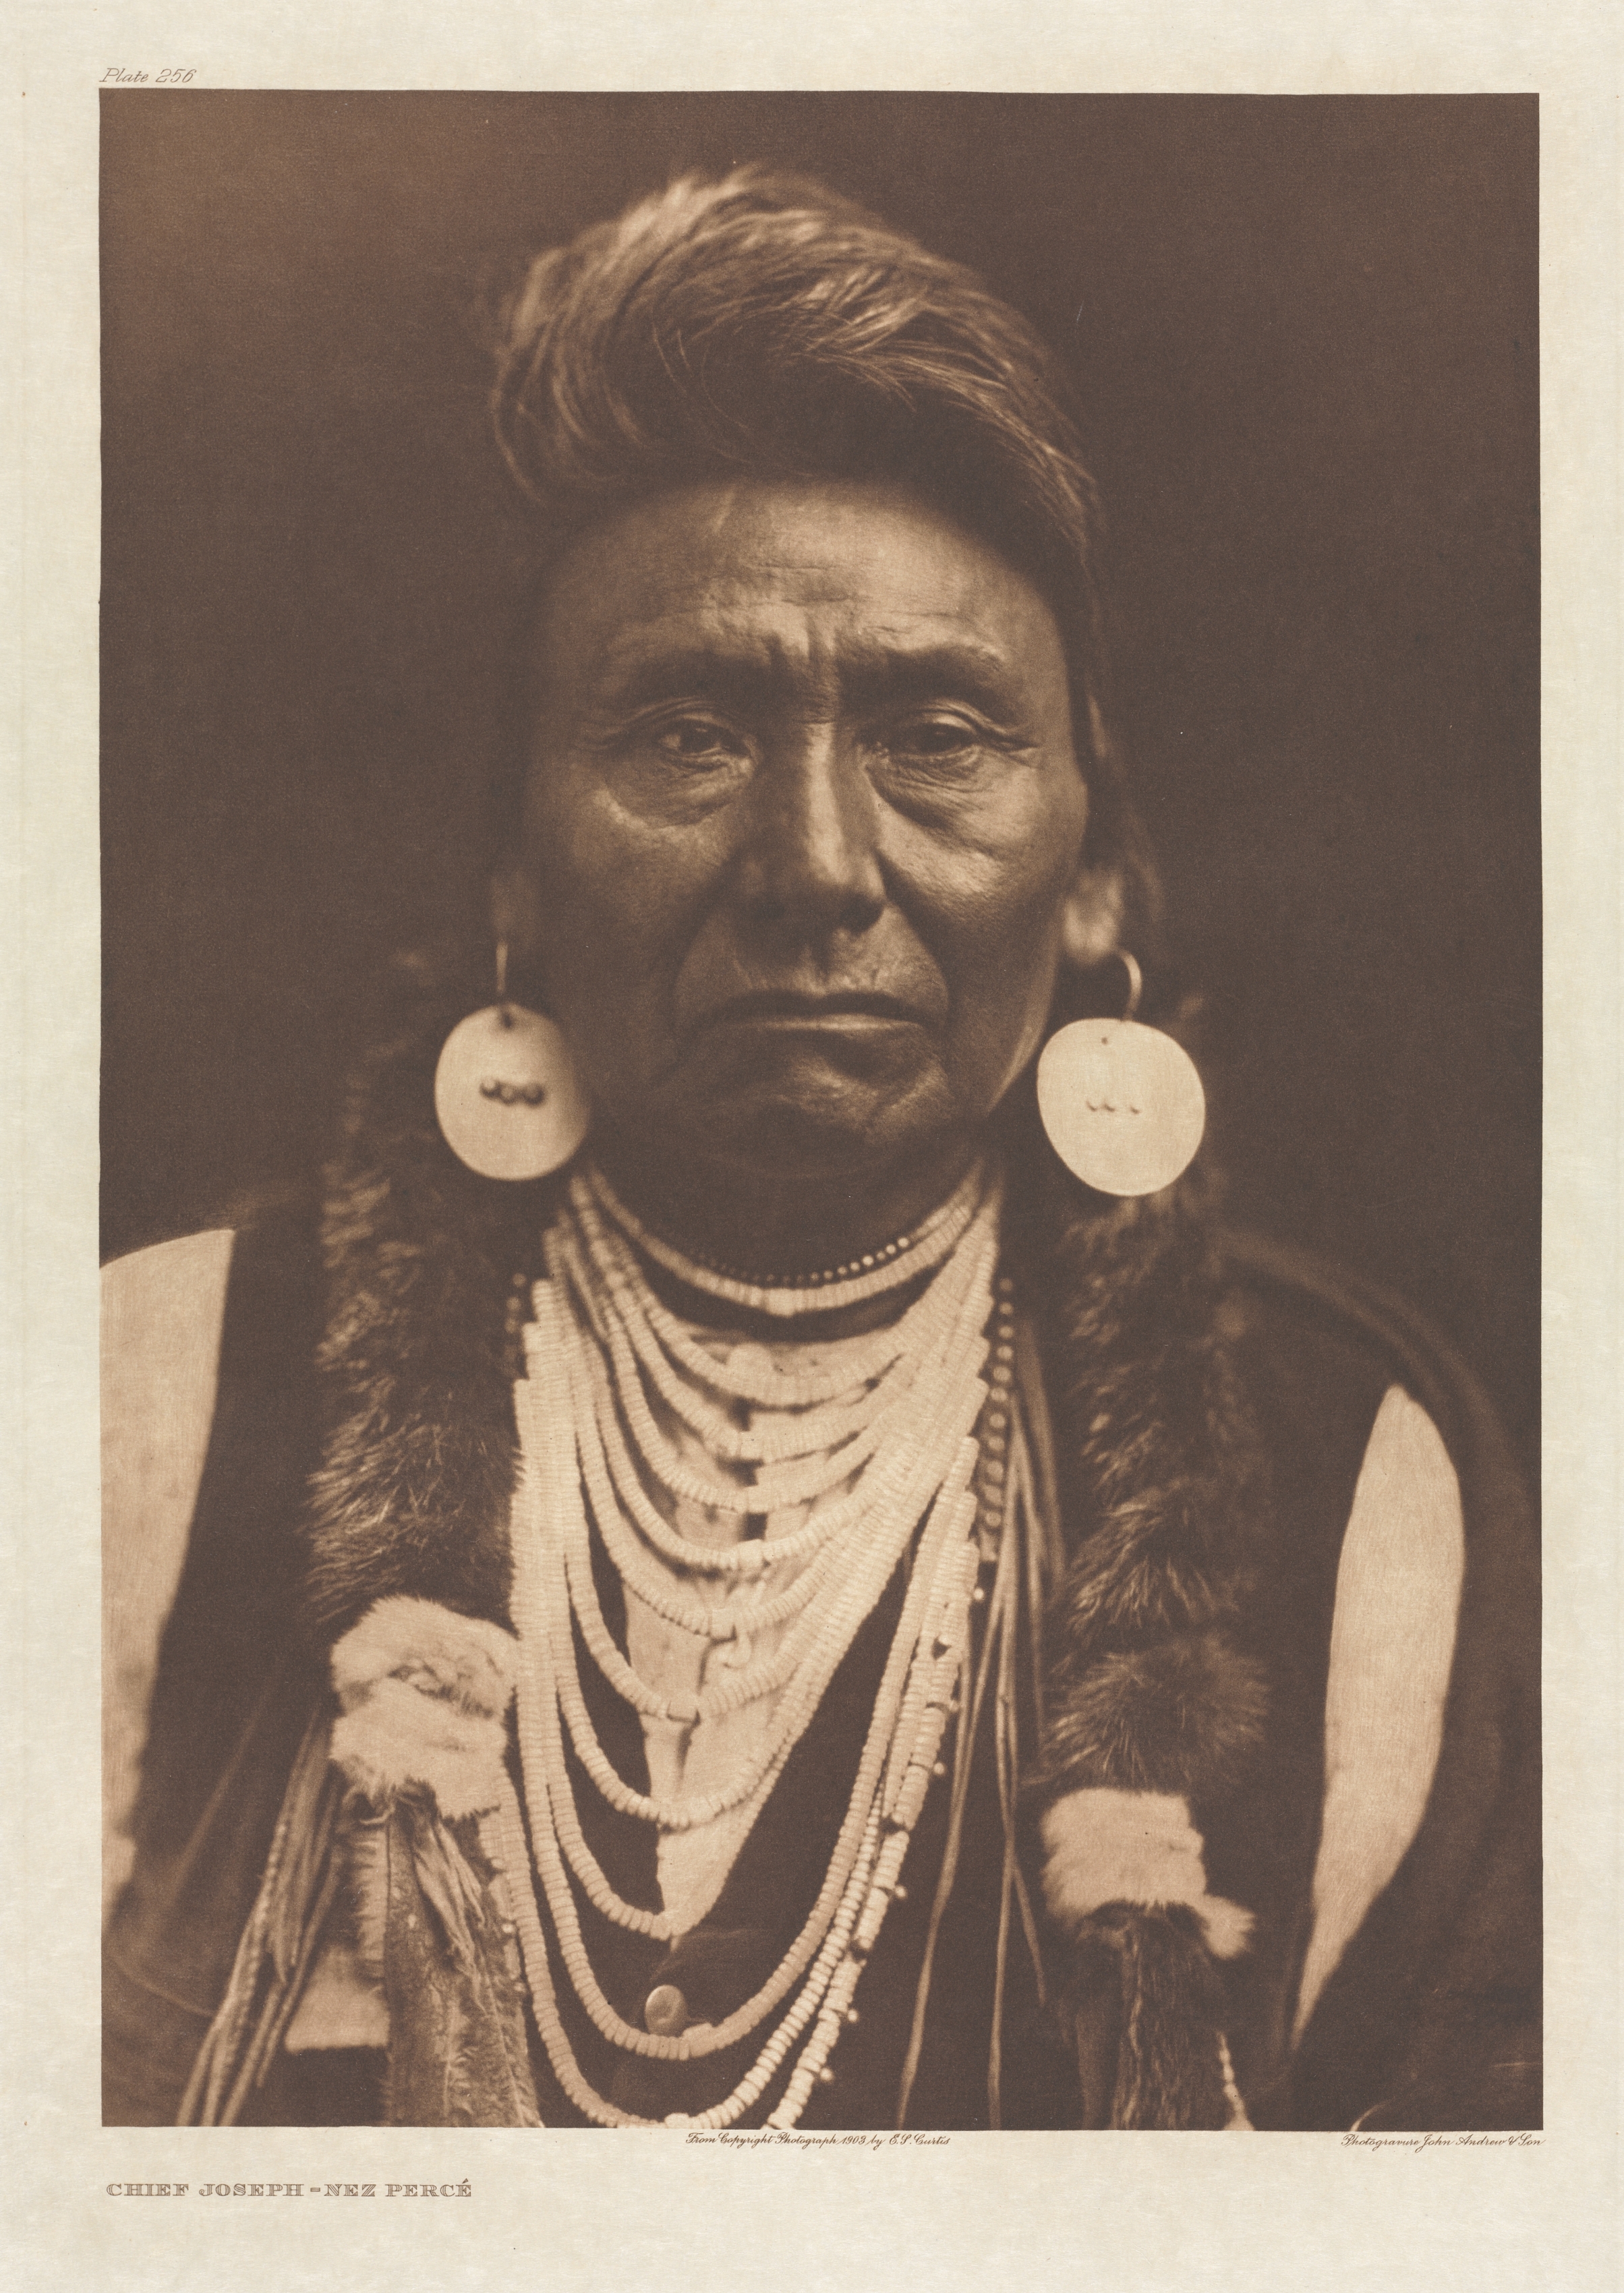 Portfolio VIII, Plate 256: Chief Joseph - Nez Percé